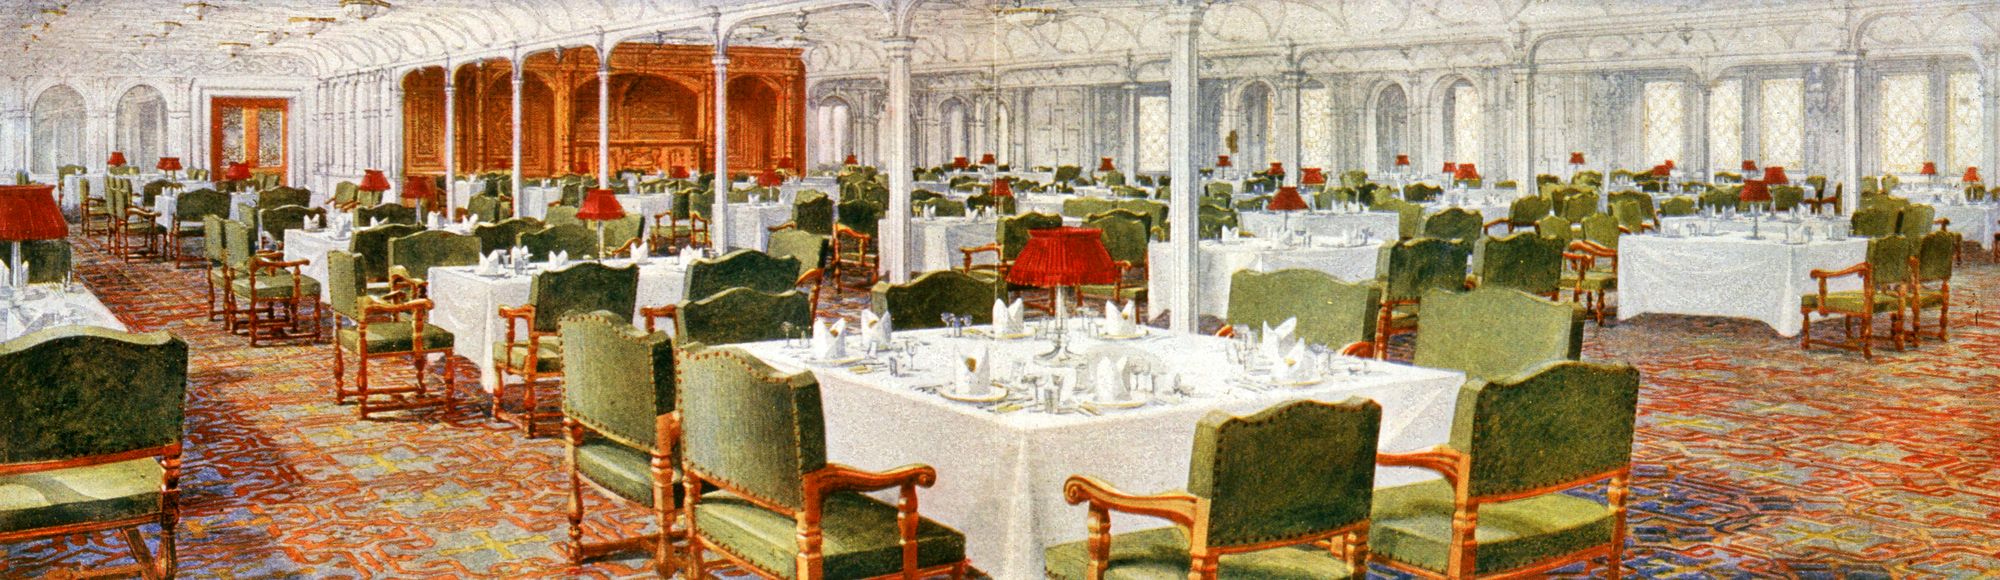 Titanicin ensimmäisen luokan ruokailusalonki oli avara ja pöydät aina aina huolellisesti katettu. © Mary Evans Picture Library / Lehtikuva